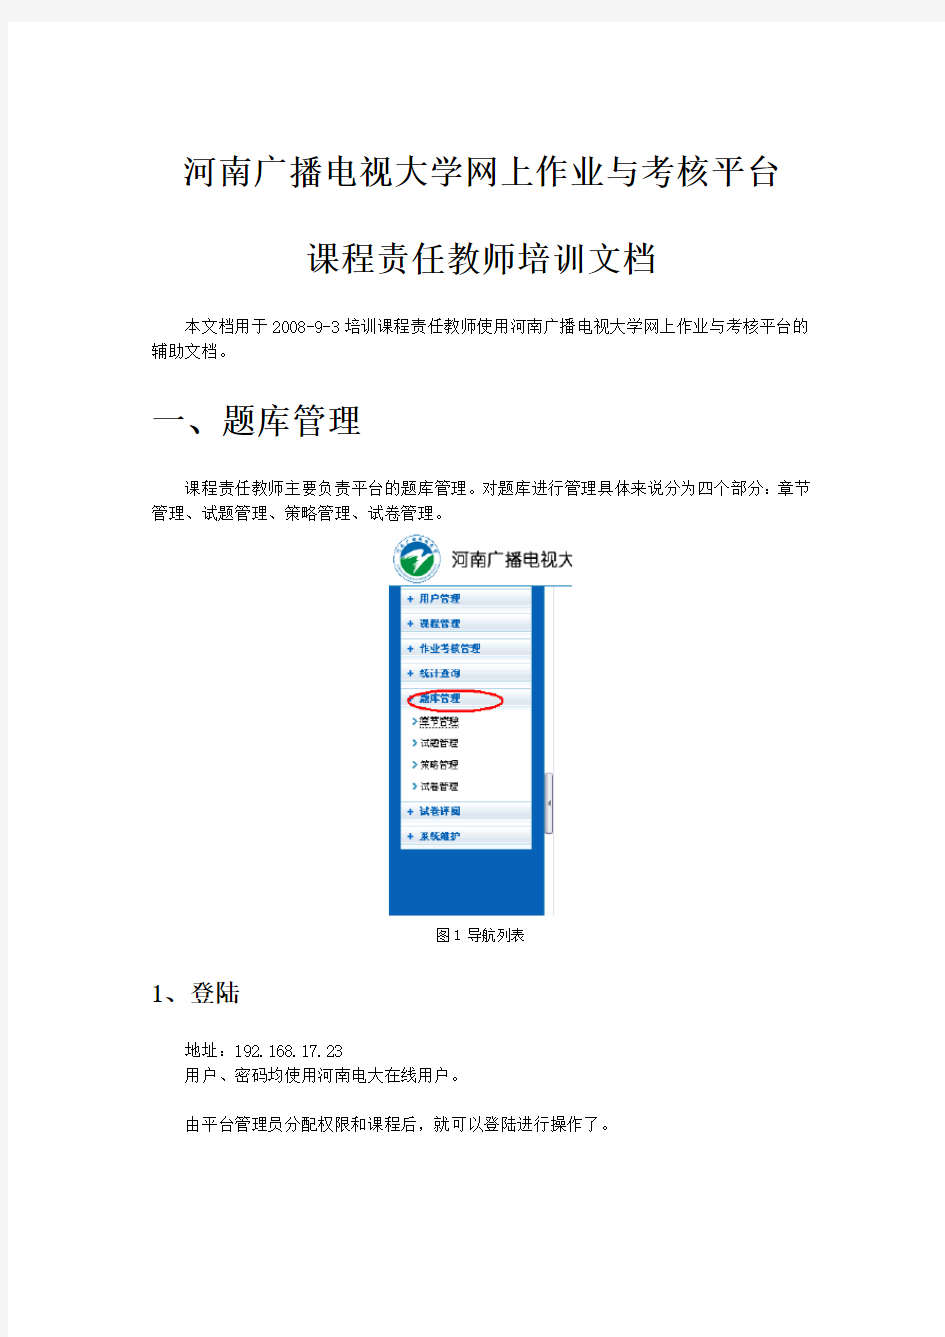 河南广播电视大学网上作业与考核平台